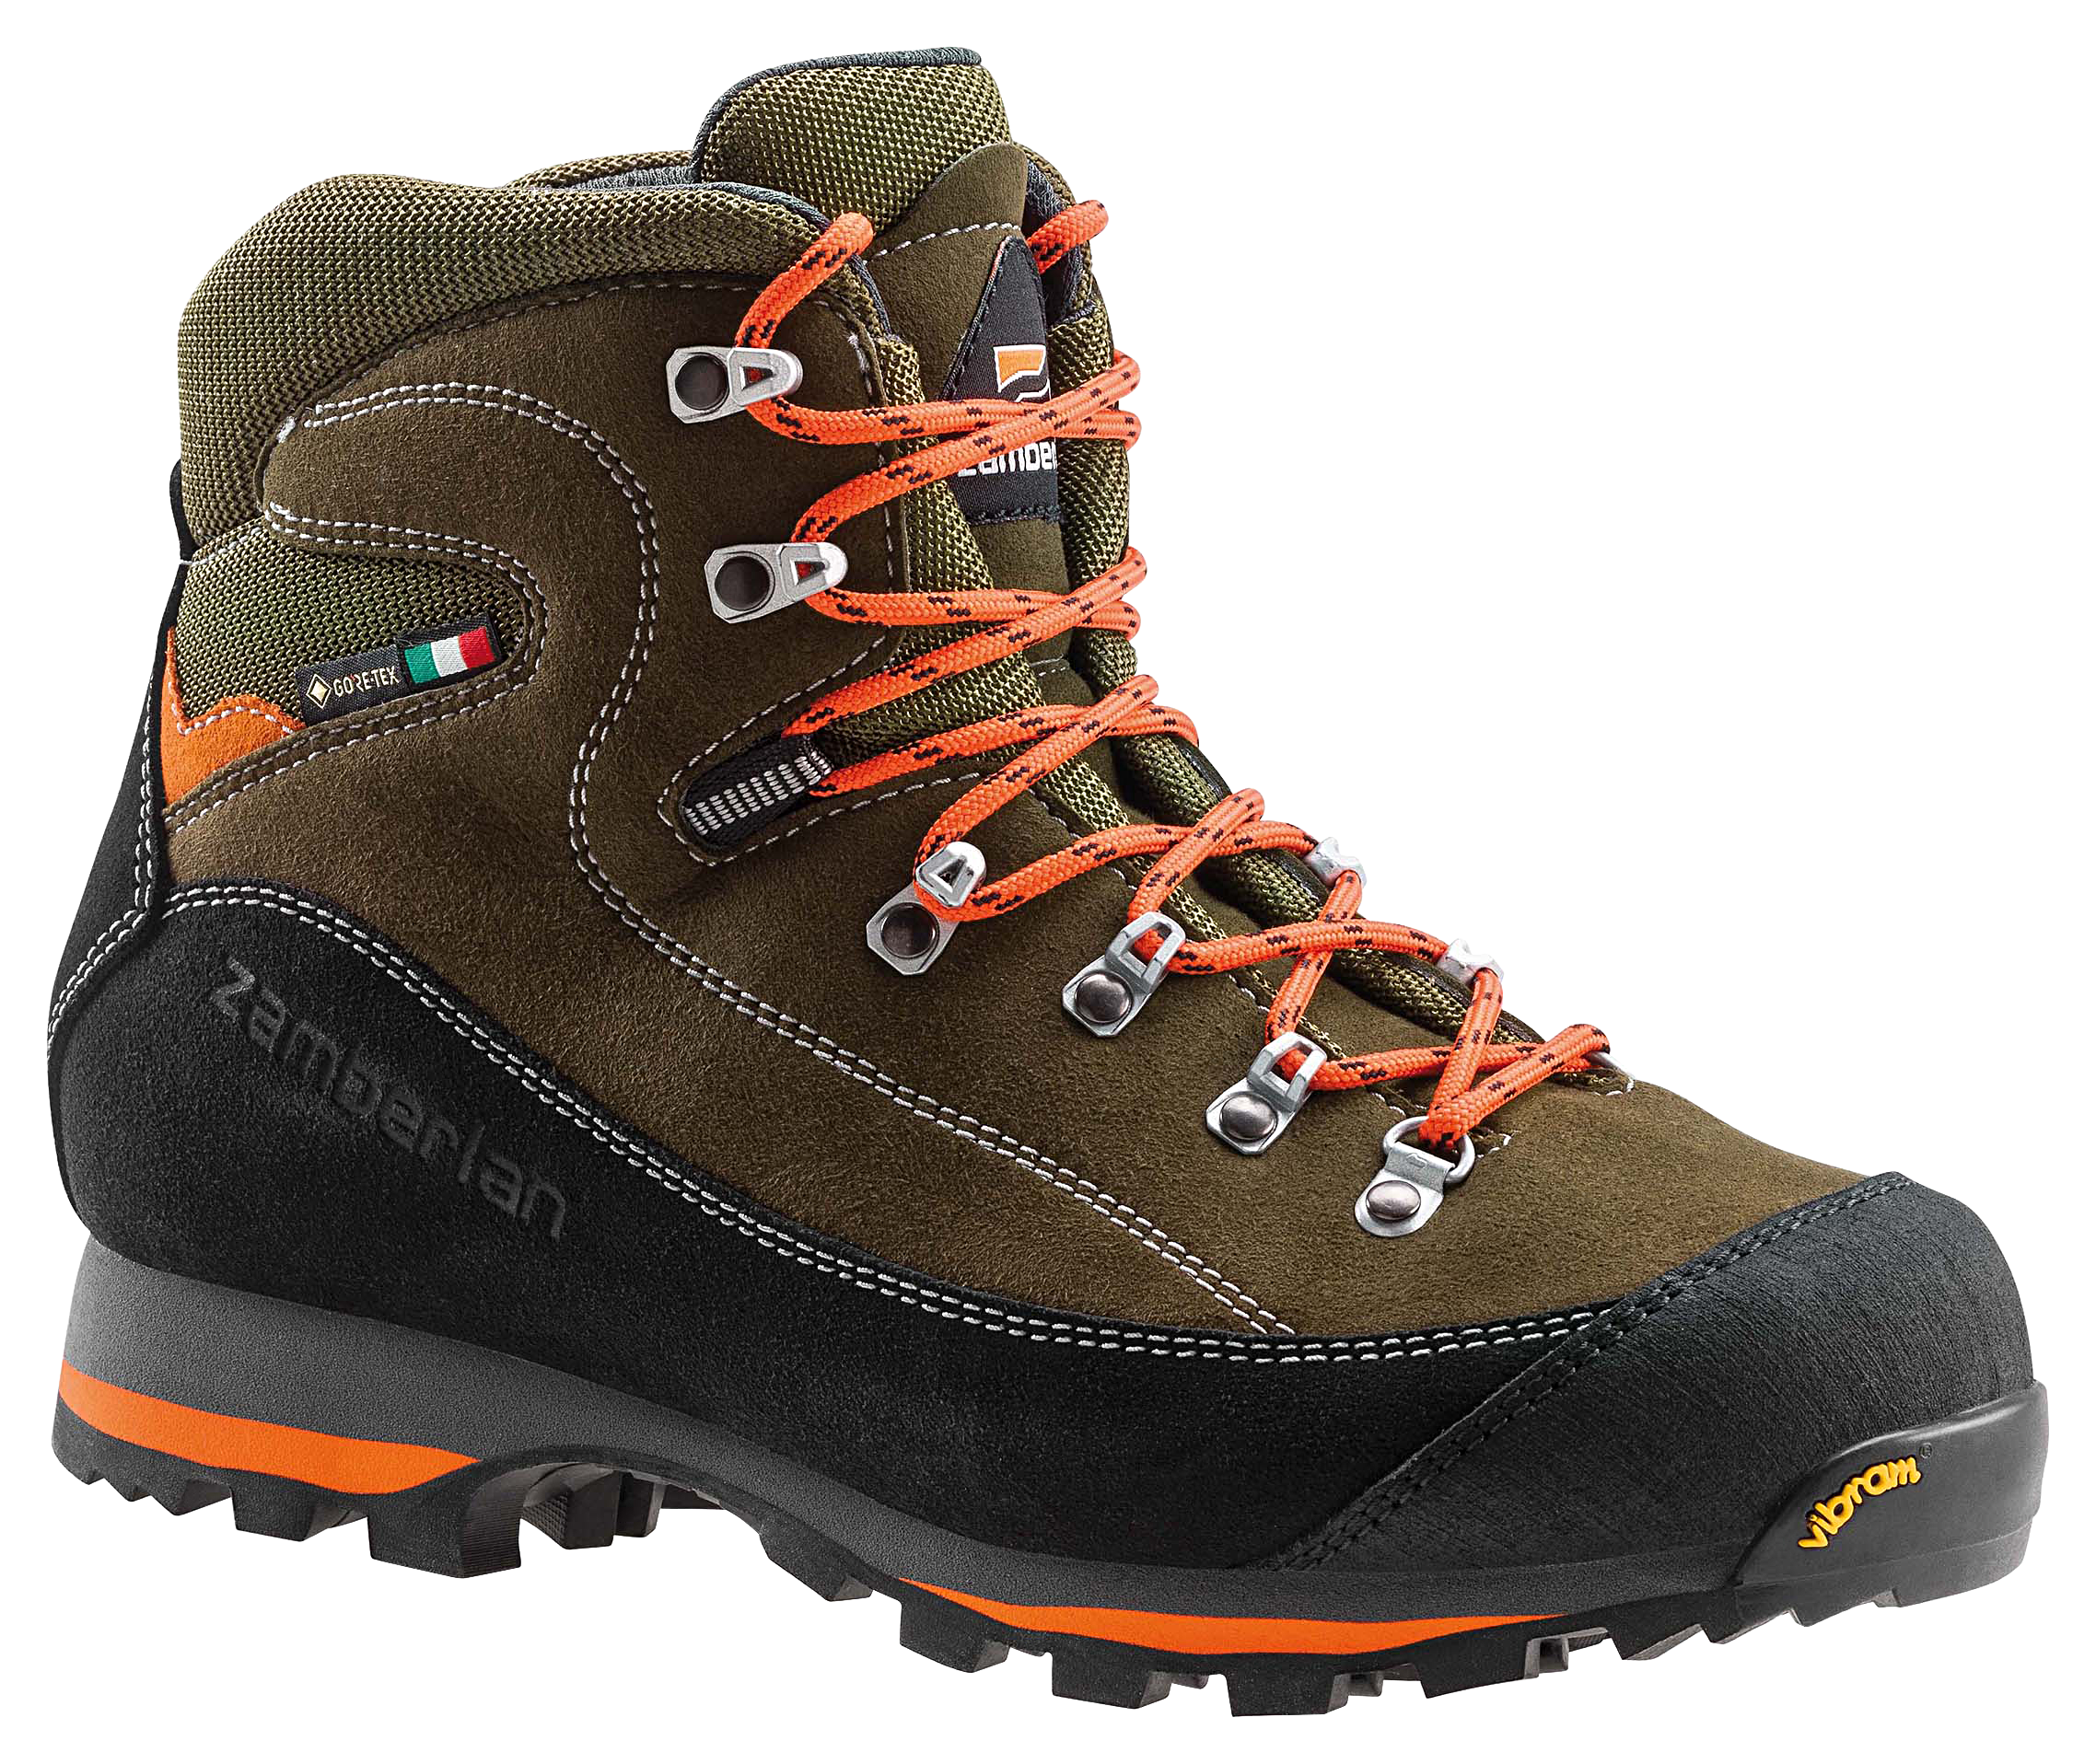 Zamberlan 700 Sierra GTX Waterproof Hunting Boots for Men